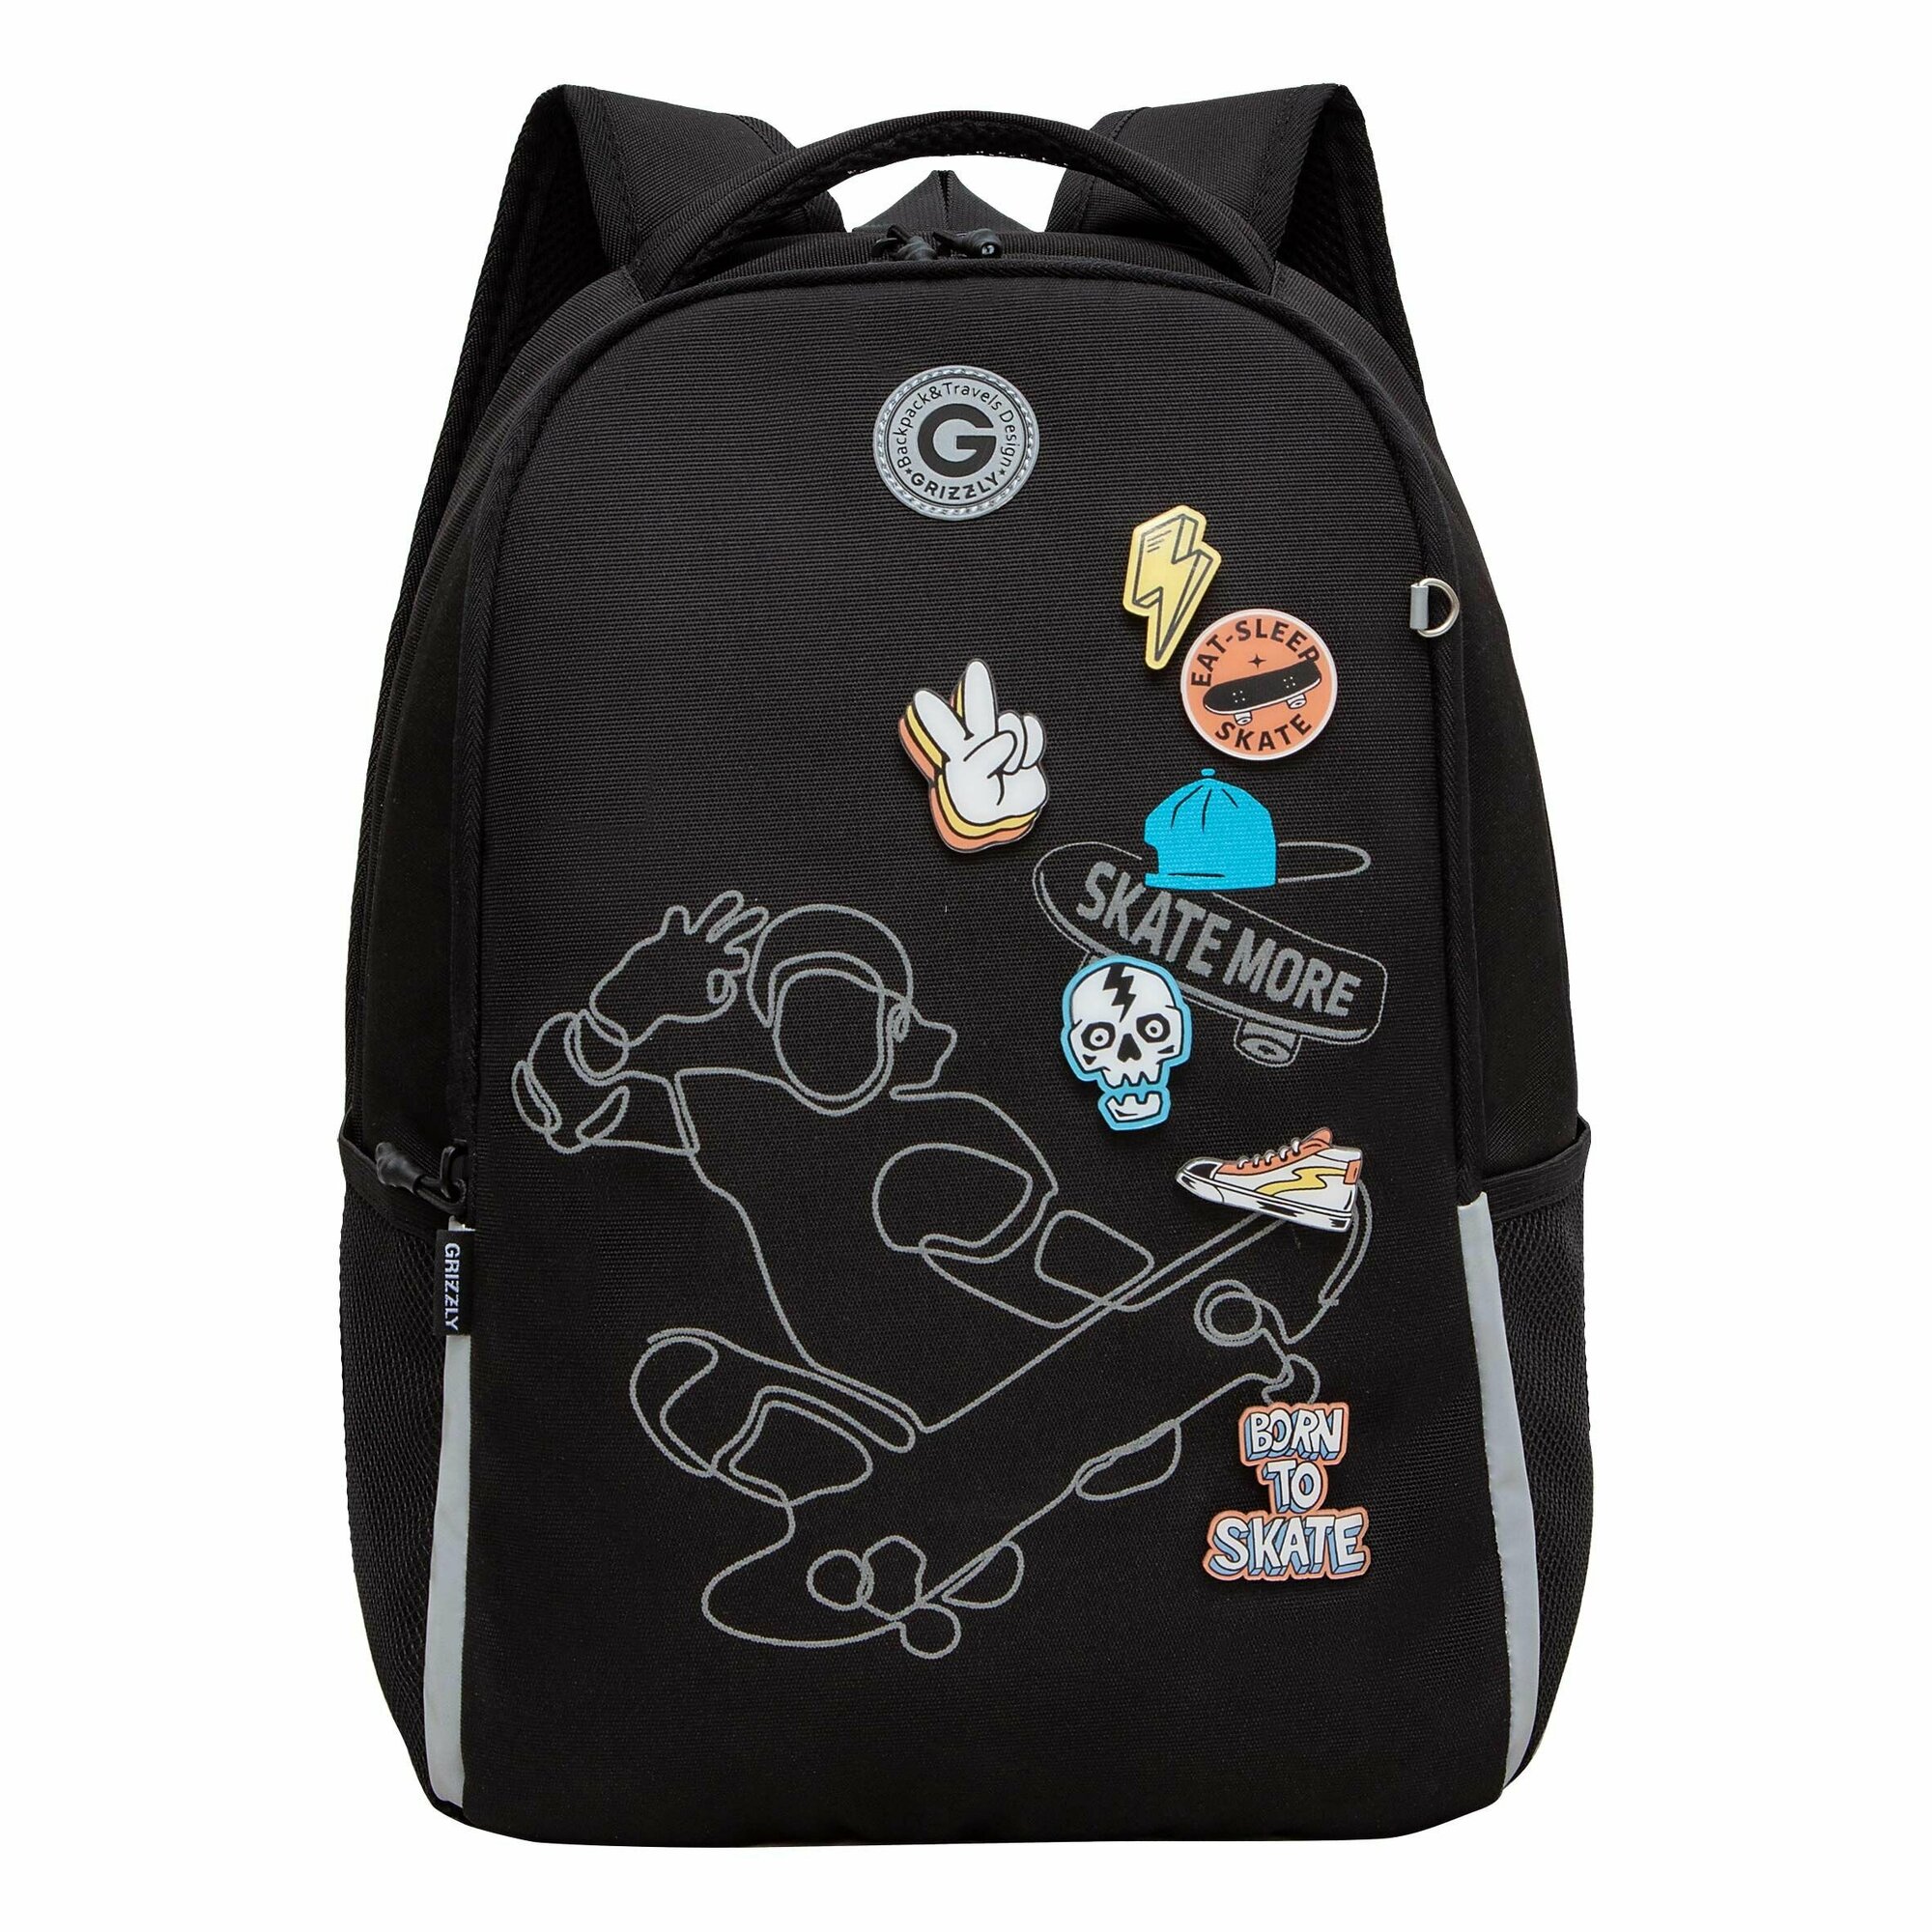 Рюкзак школьный для мальчика подростка, с ортопедической спинкой, для средней школы, GRIZZLY, (черный)